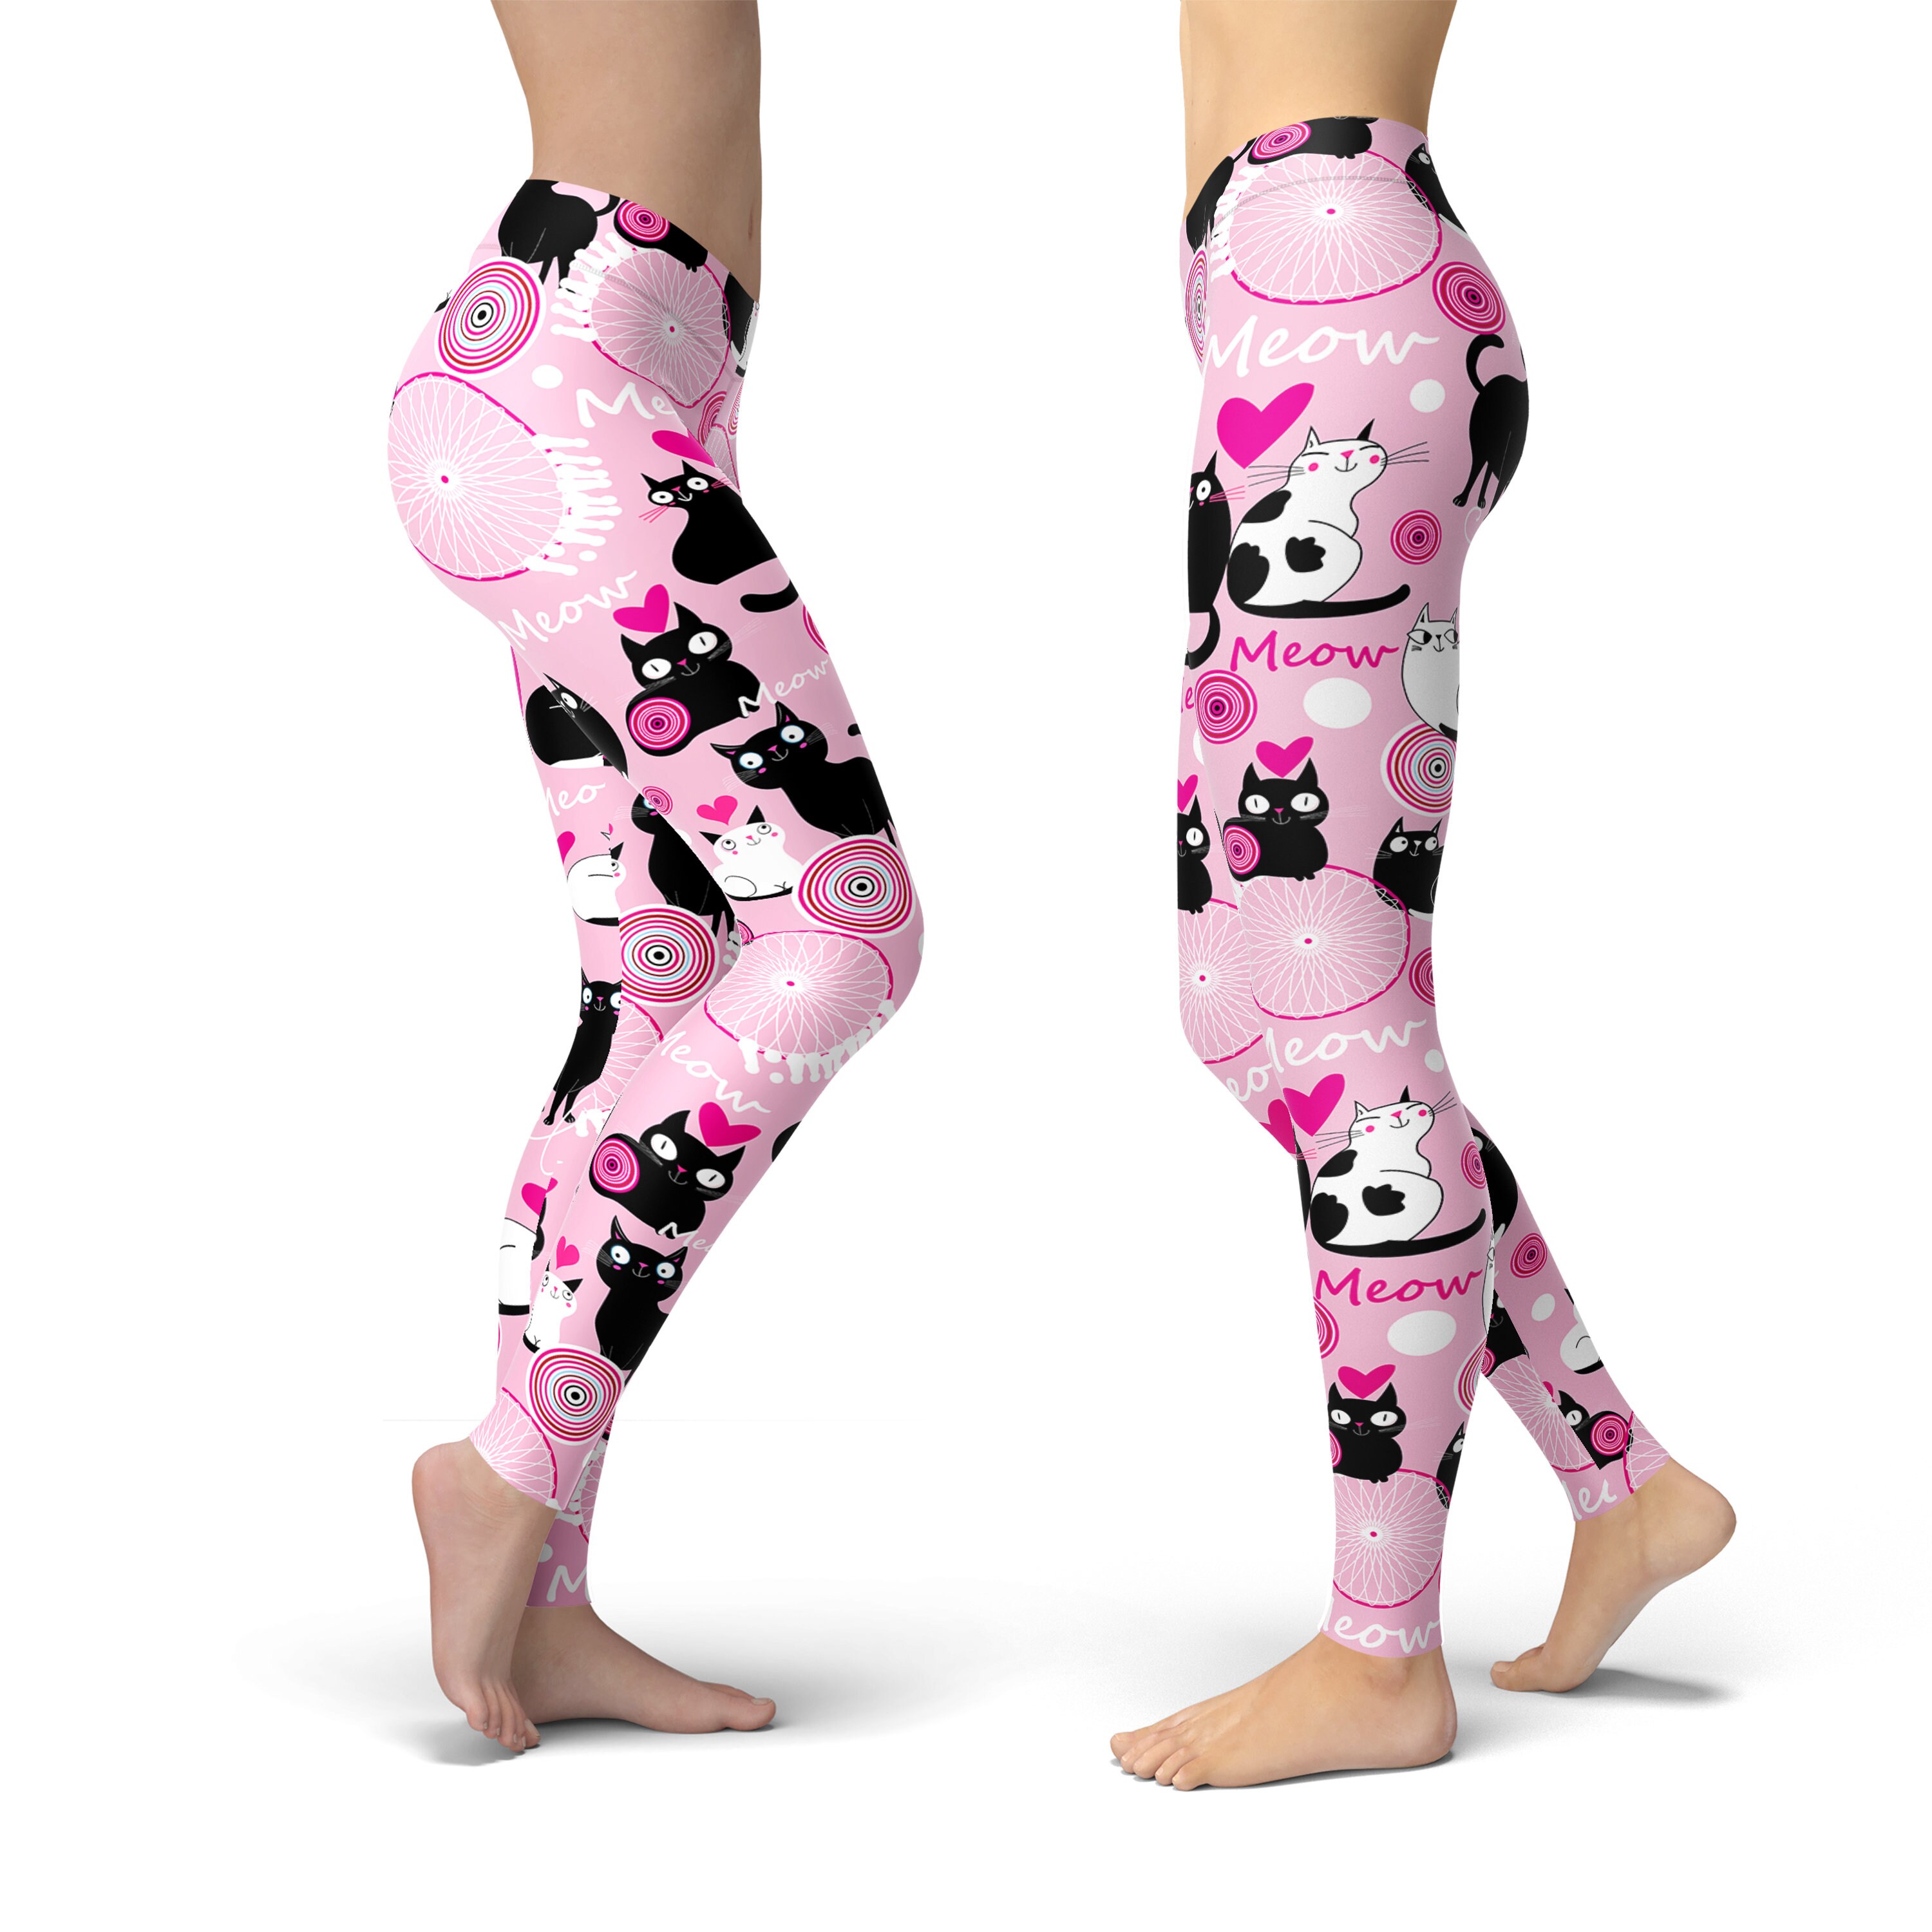 Cute Valentine Legging, Cute Cat Leggings, Valentine's Day Leggings,  Printed Leggings, Yoga Pants, Yoga Capris, Yoga Tights 